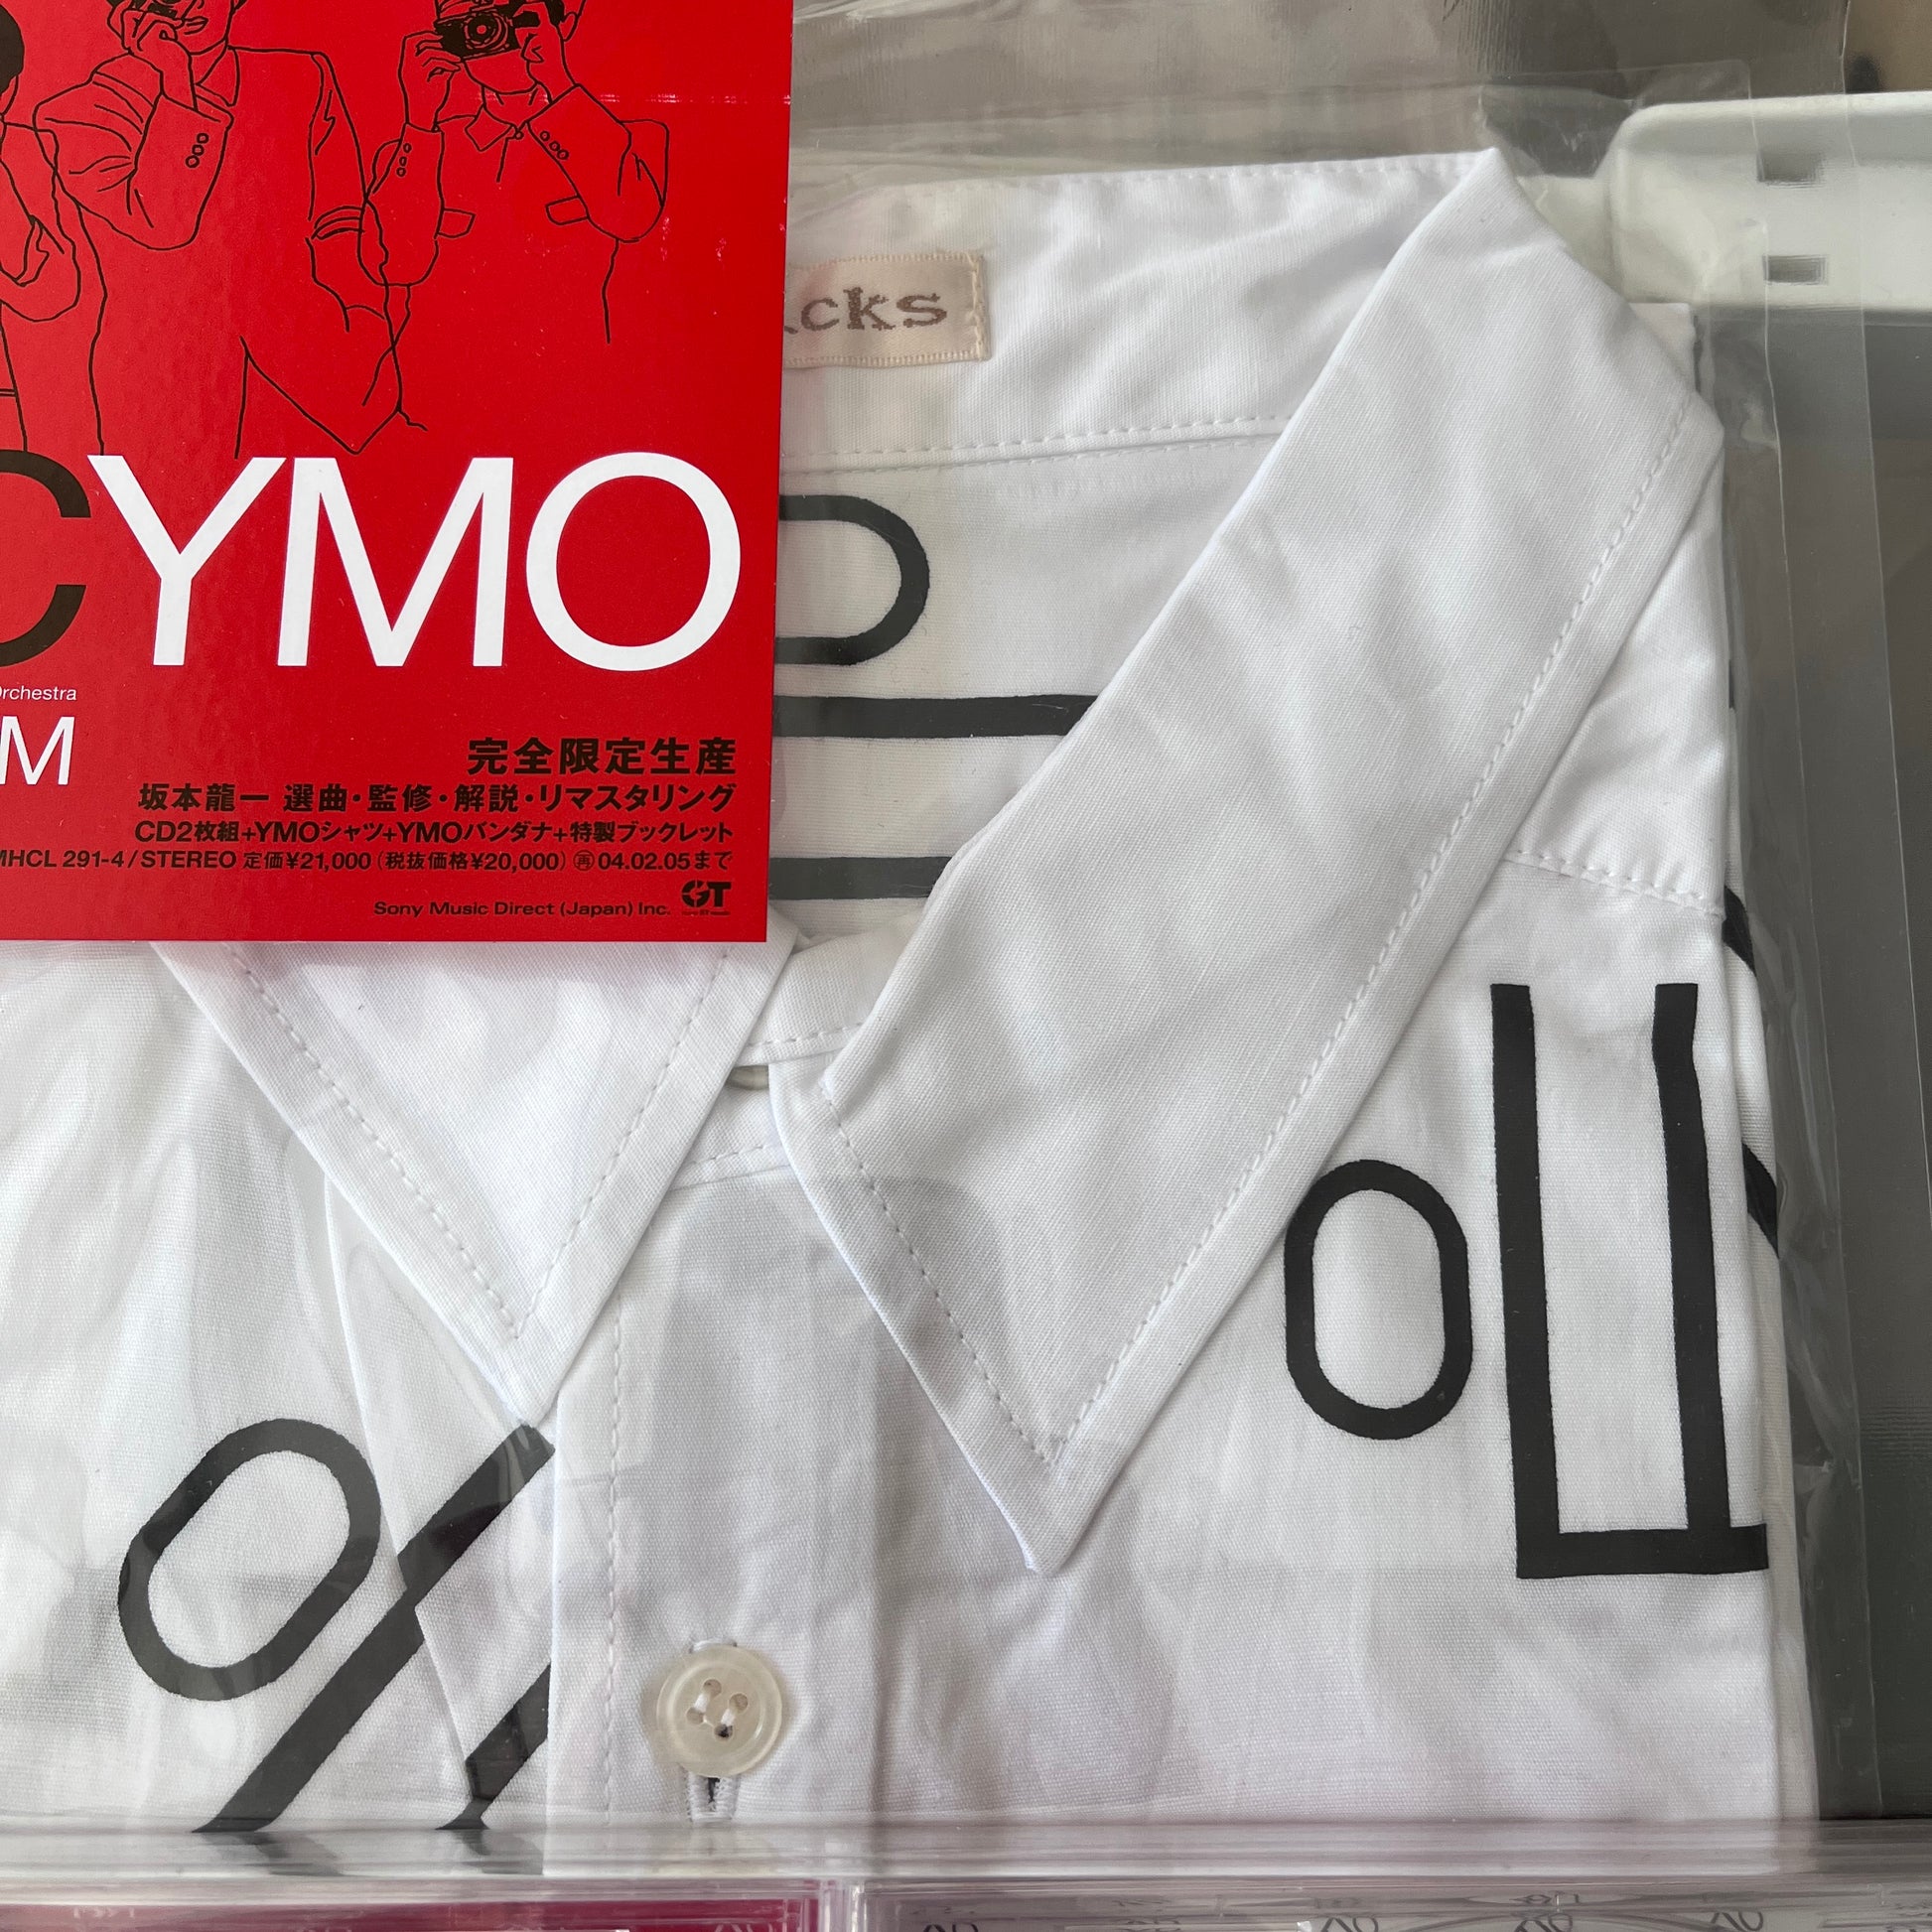 UC YMO PREMIUM 完全限定生産 YMOシャツ, YMOバンダナテクノ - 邦楽